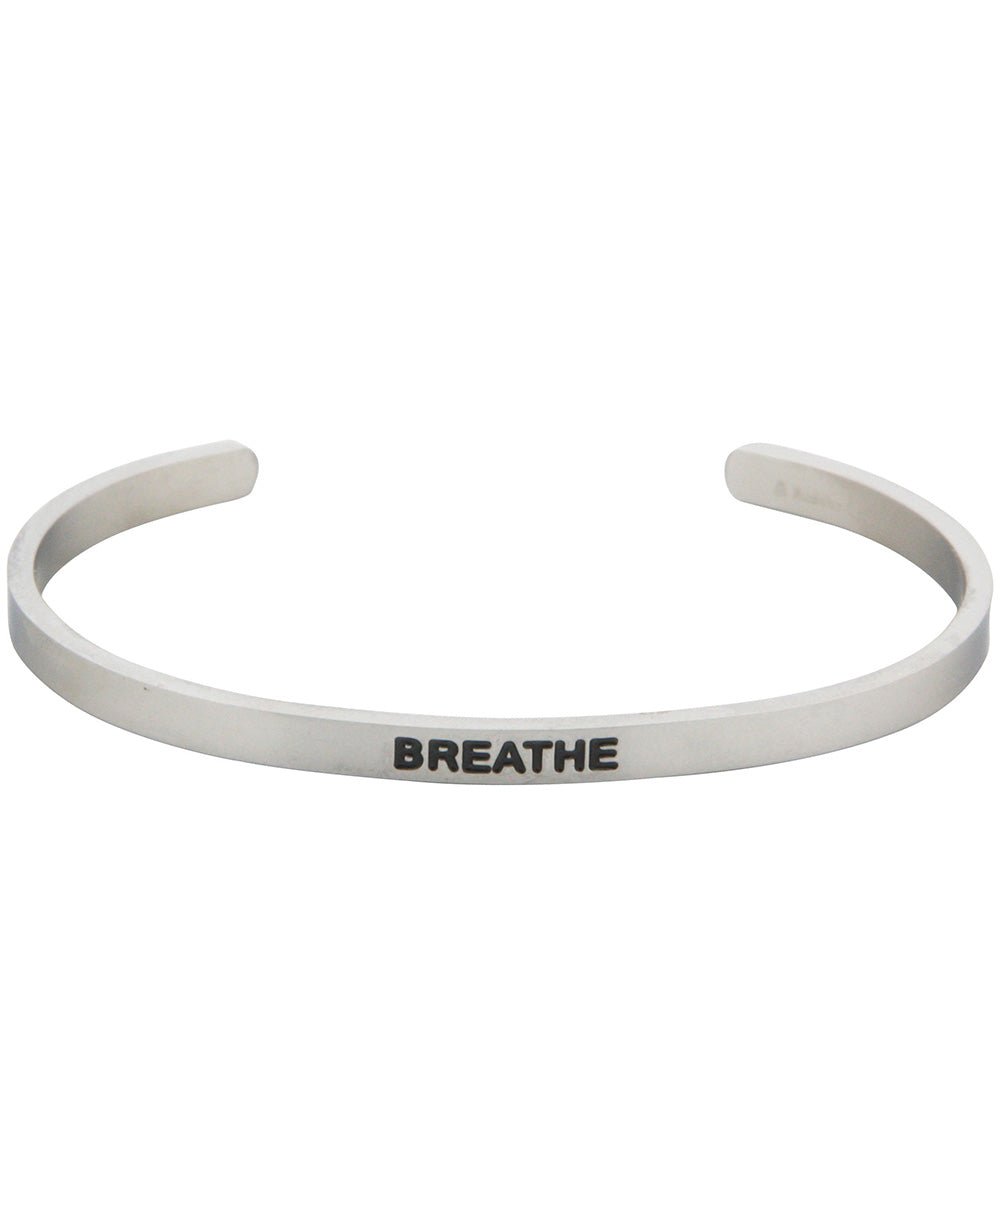 Breathe Cuff Bracelet, Adjustable - Bracelets